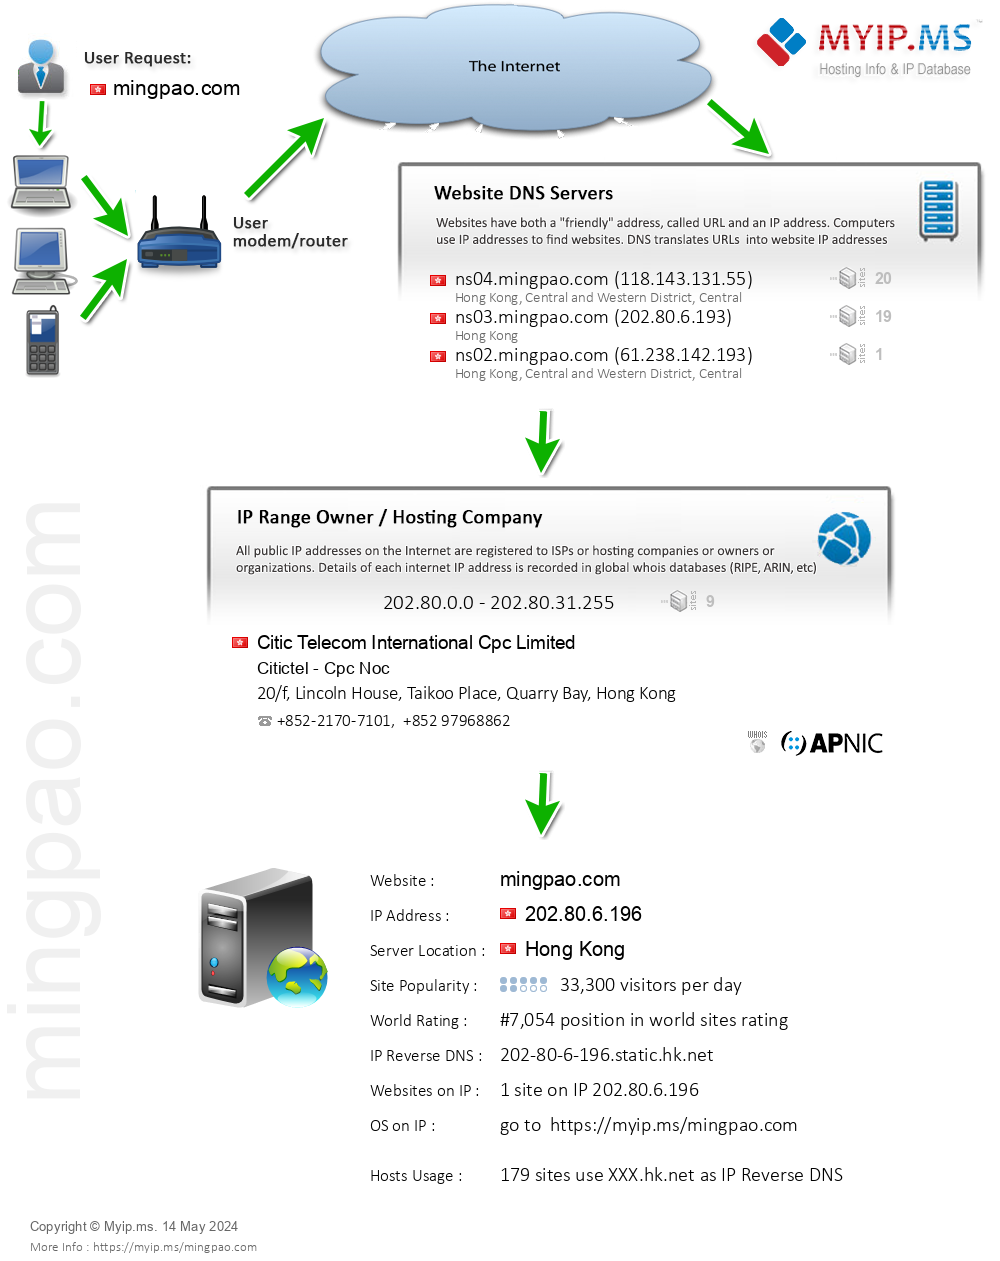 Mingpao.com - Website Hosting Visual IP Diagram